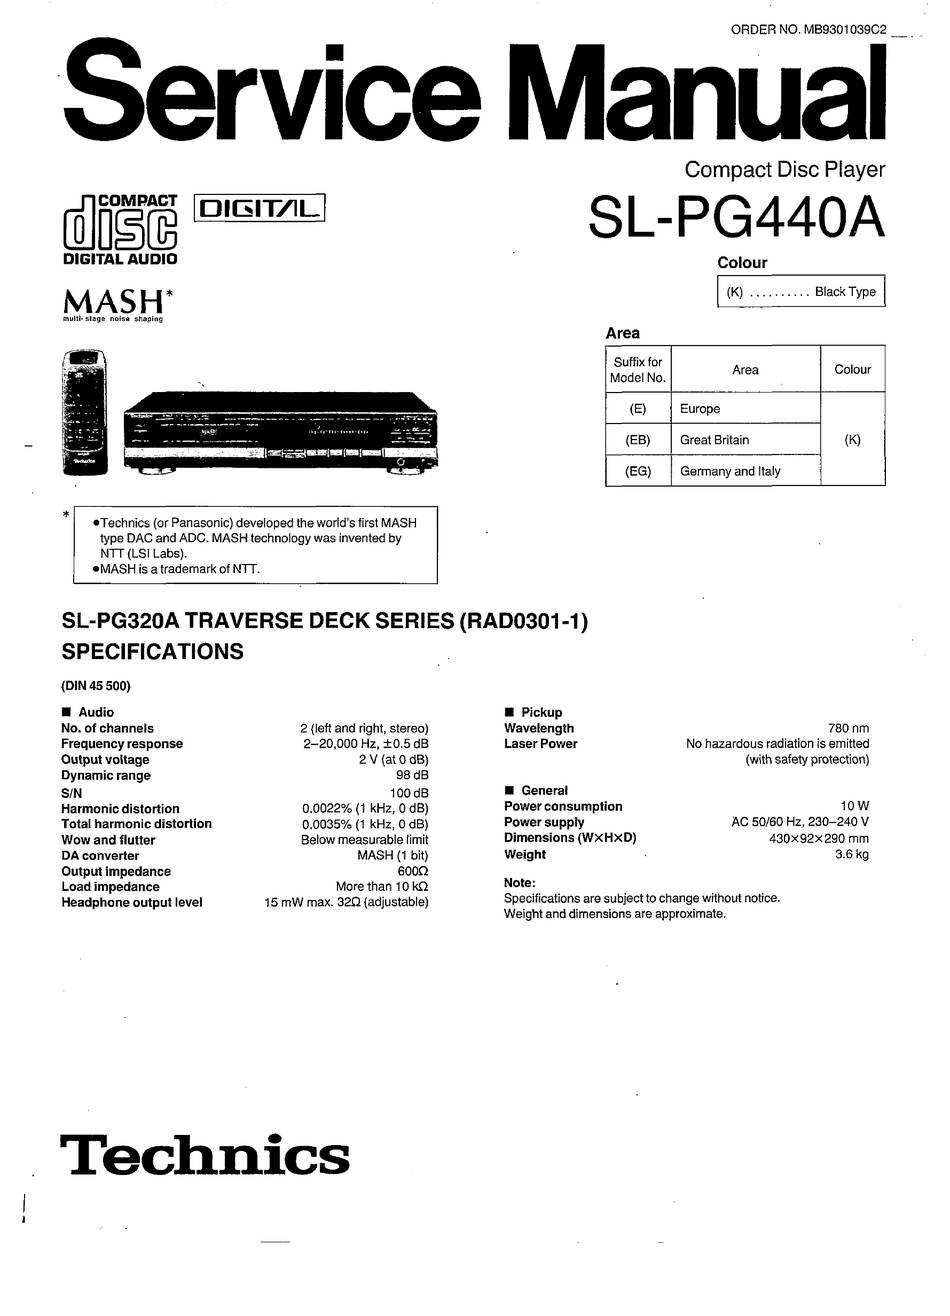 Technics SL-PG440A